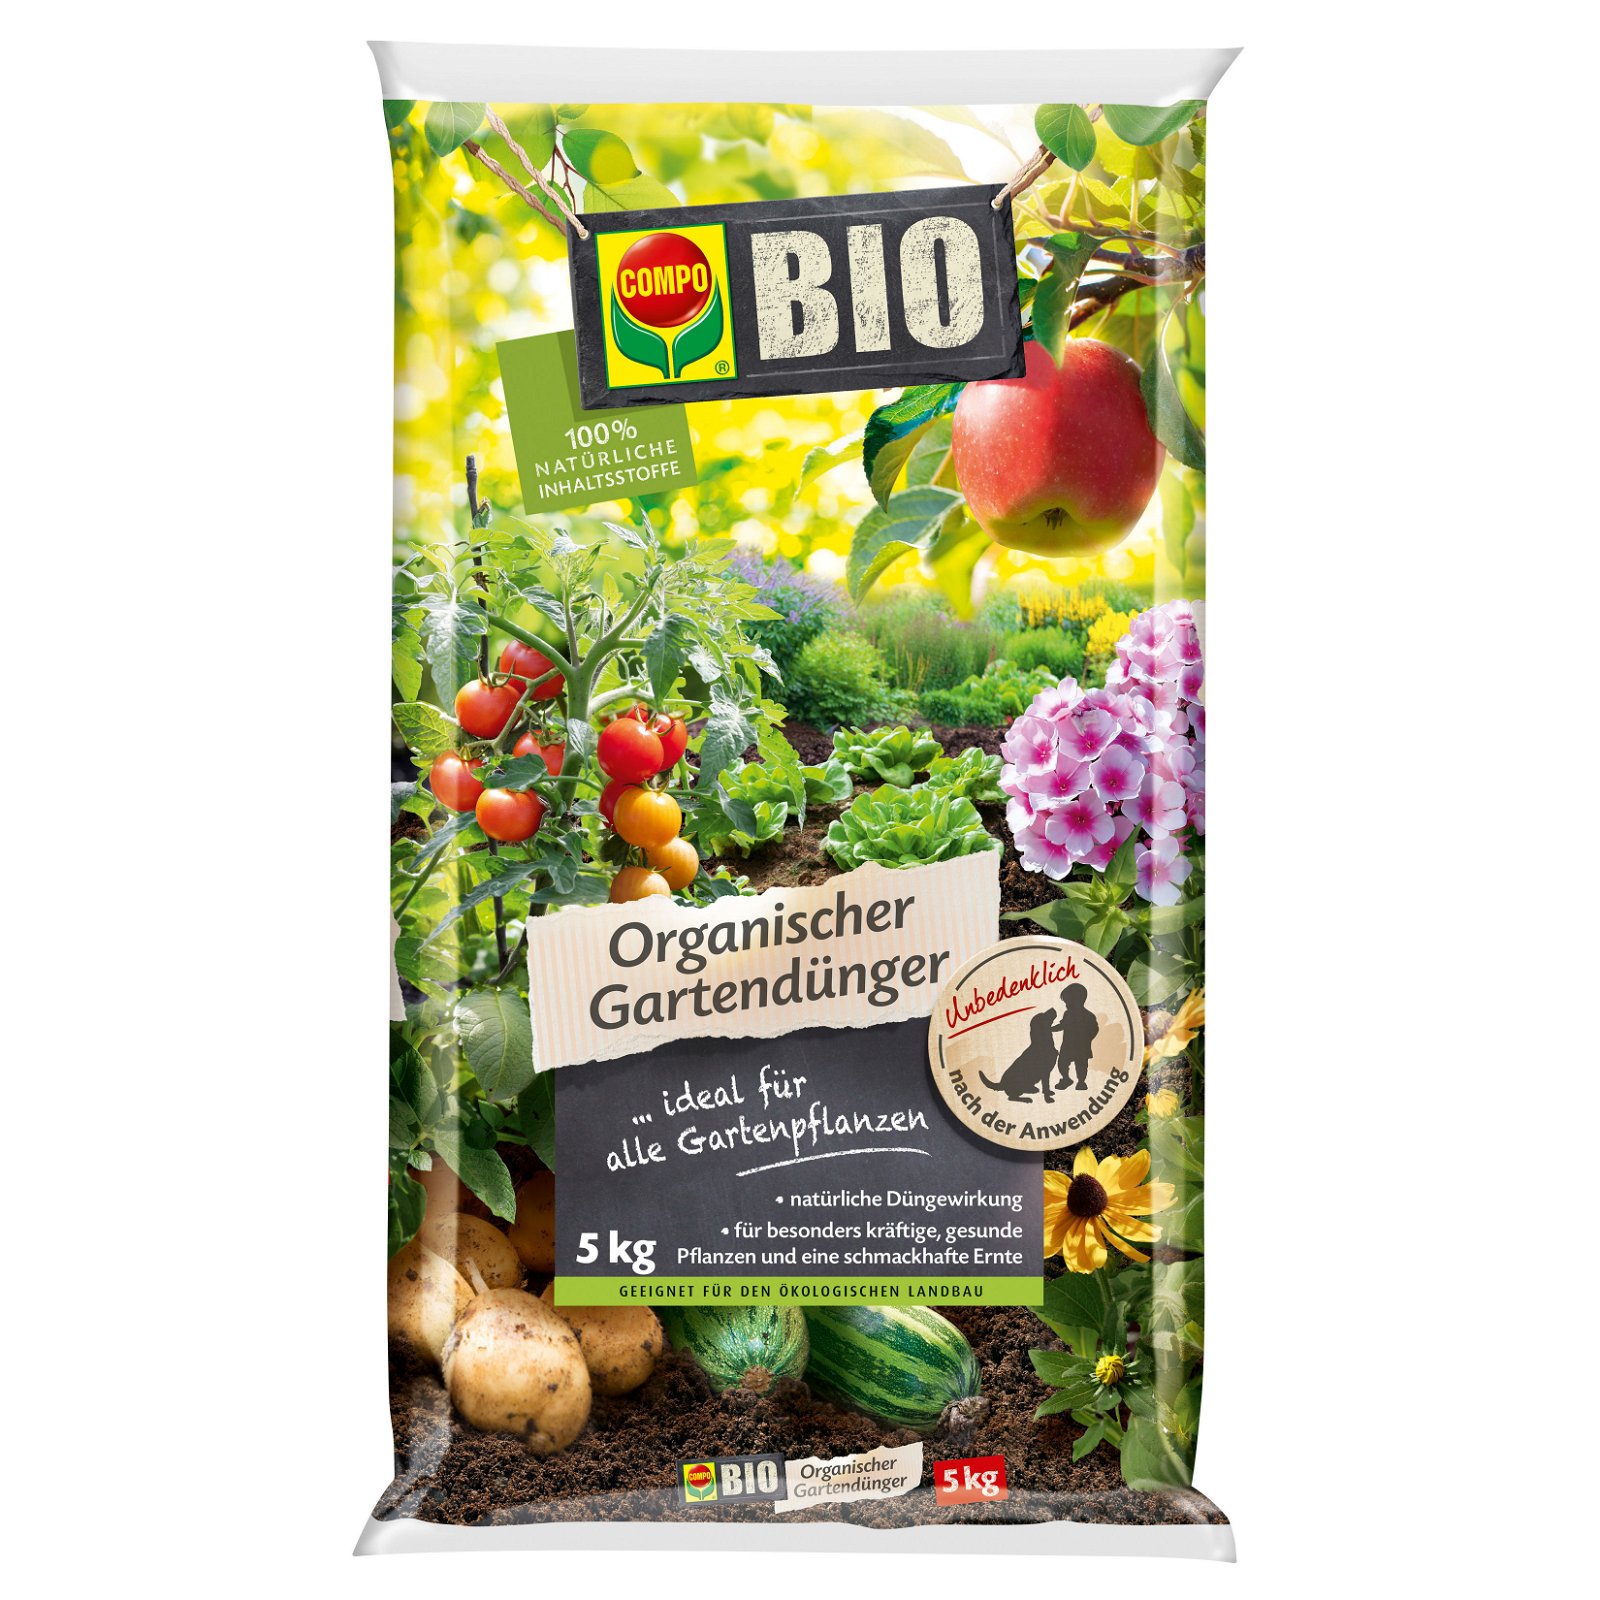 Compo Bio Organischer Gartendünger, 5 kg